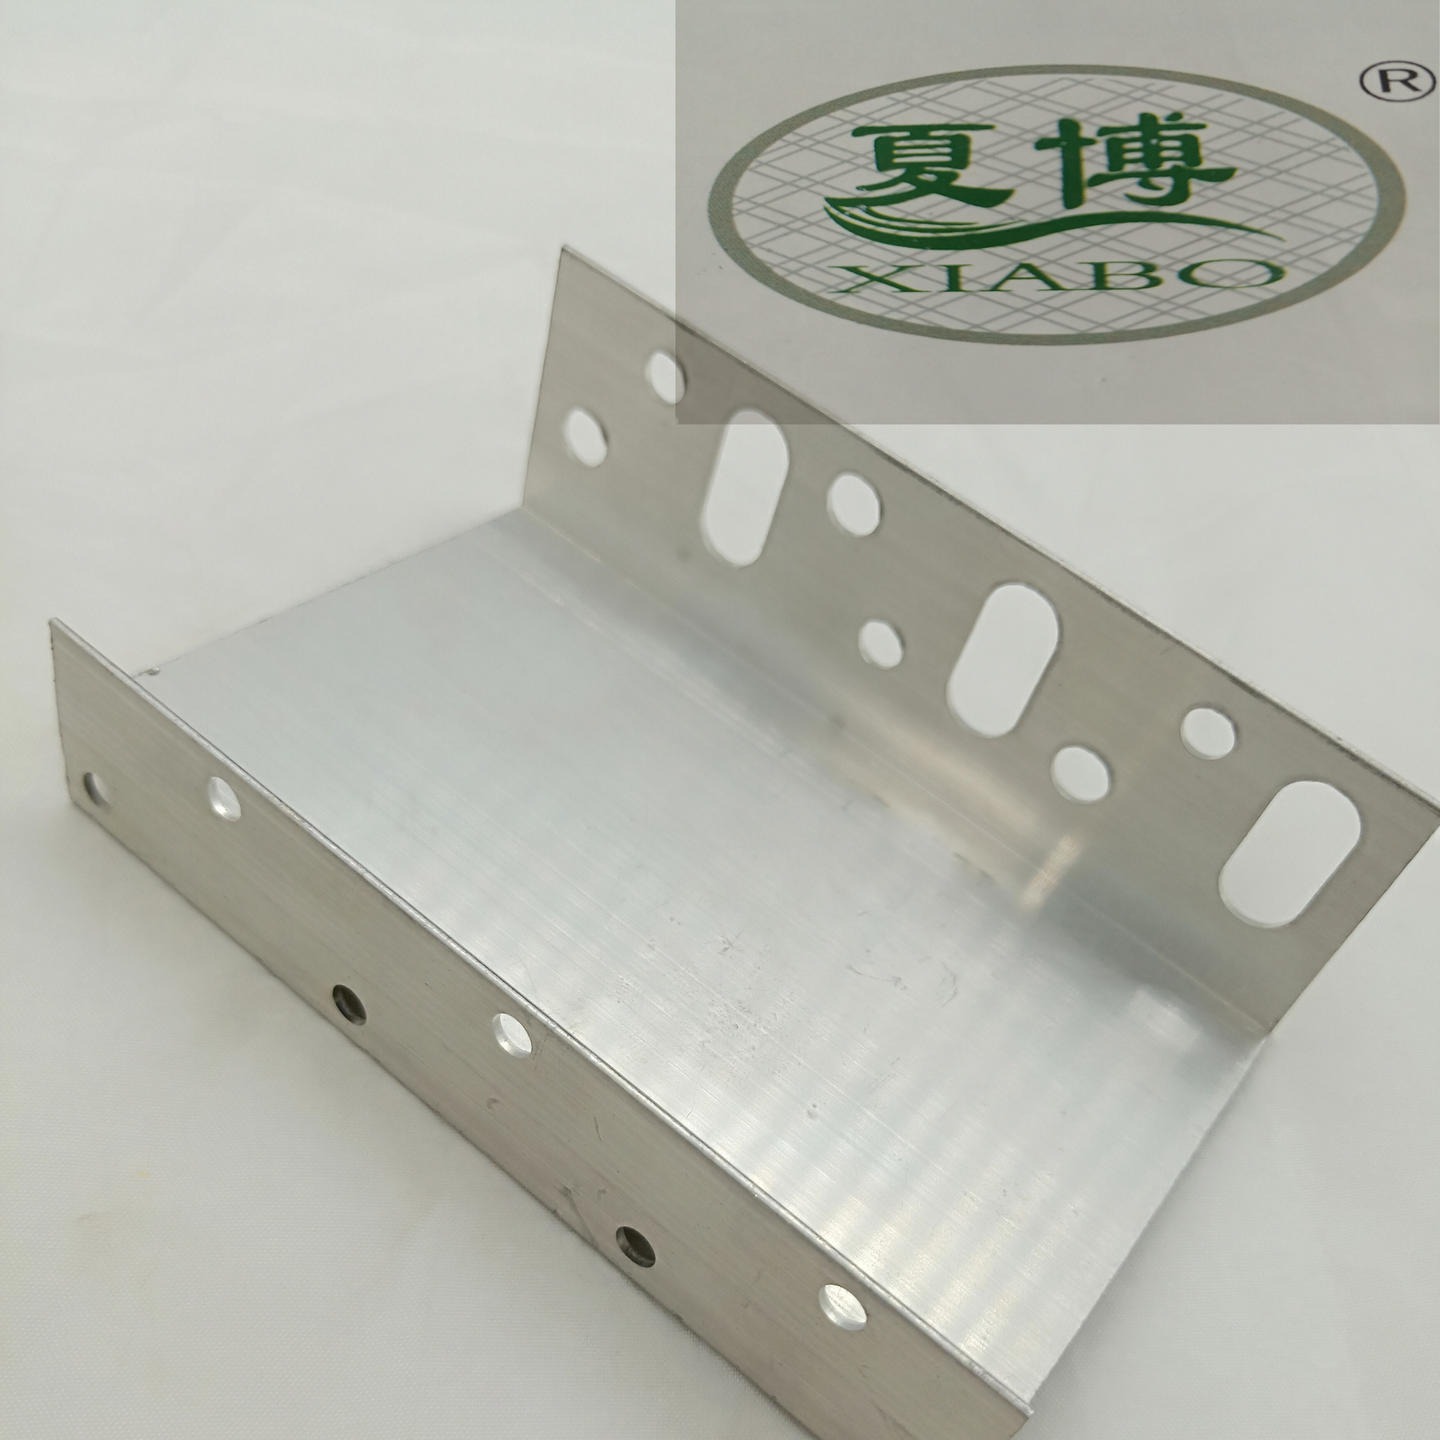 夏博公司生产优质铝合金托架